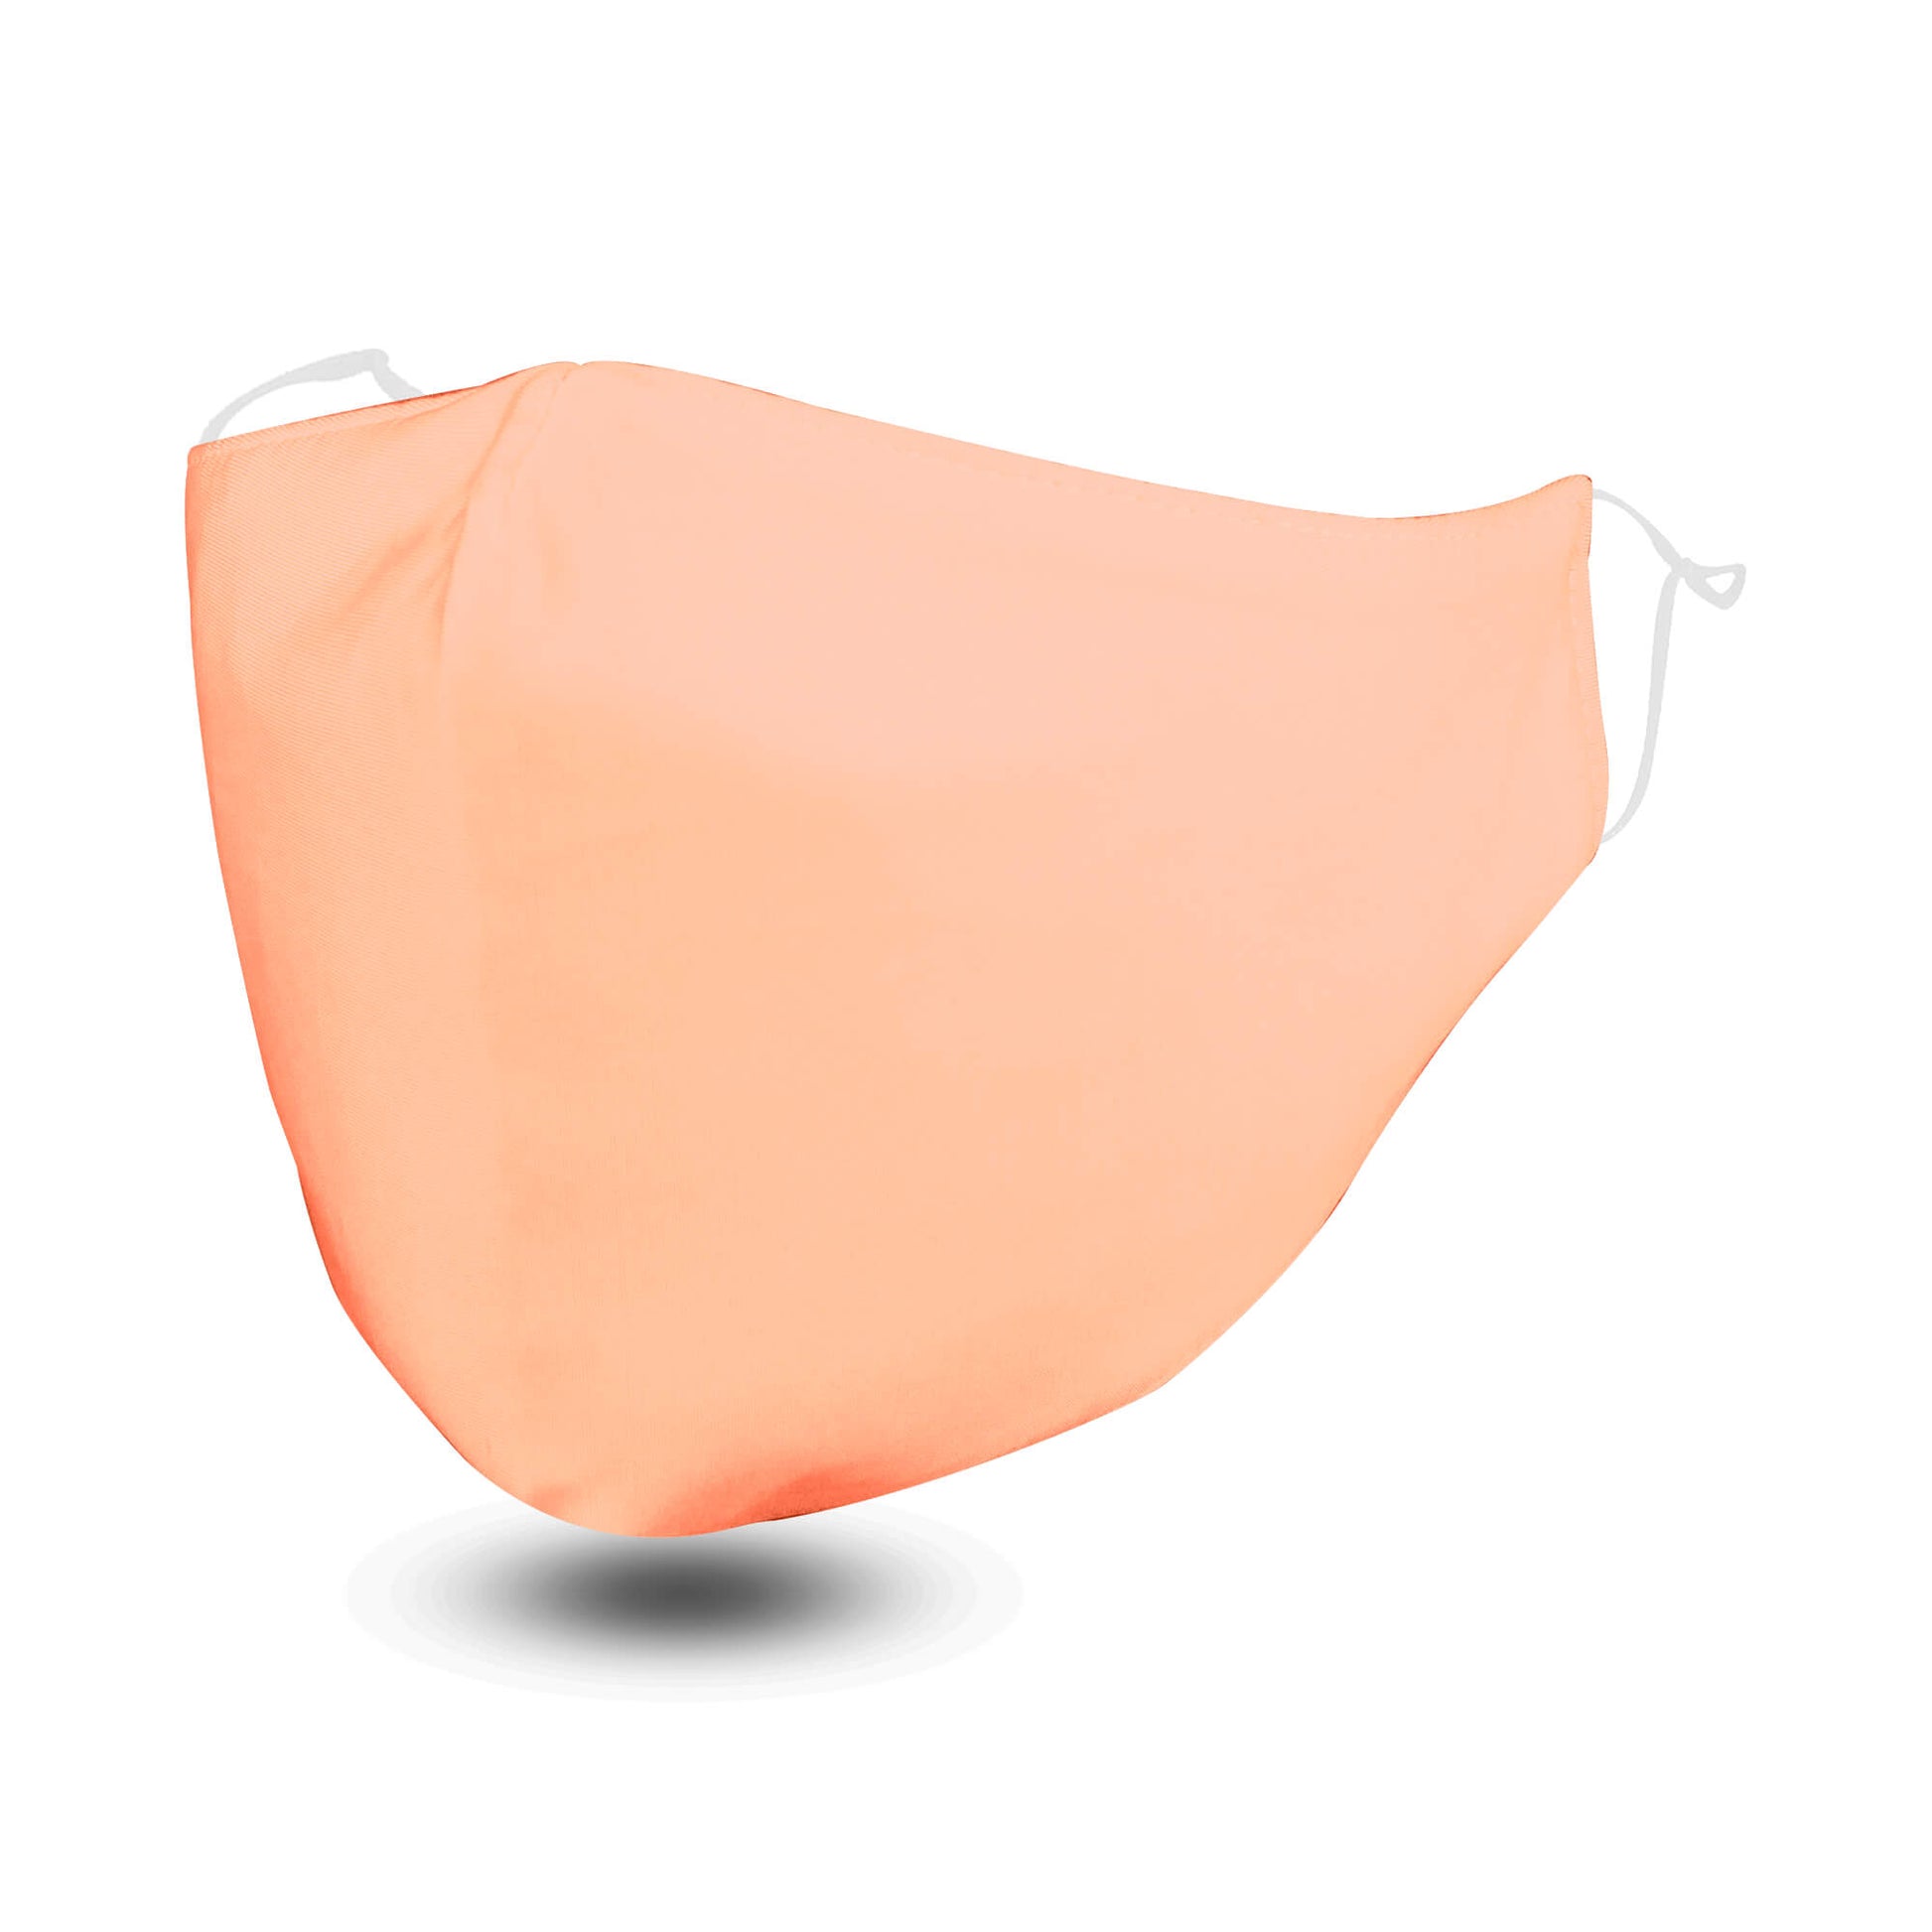 Pink FLOWZOOM Face Mask with Filter Pocket - Soft & Adjustable